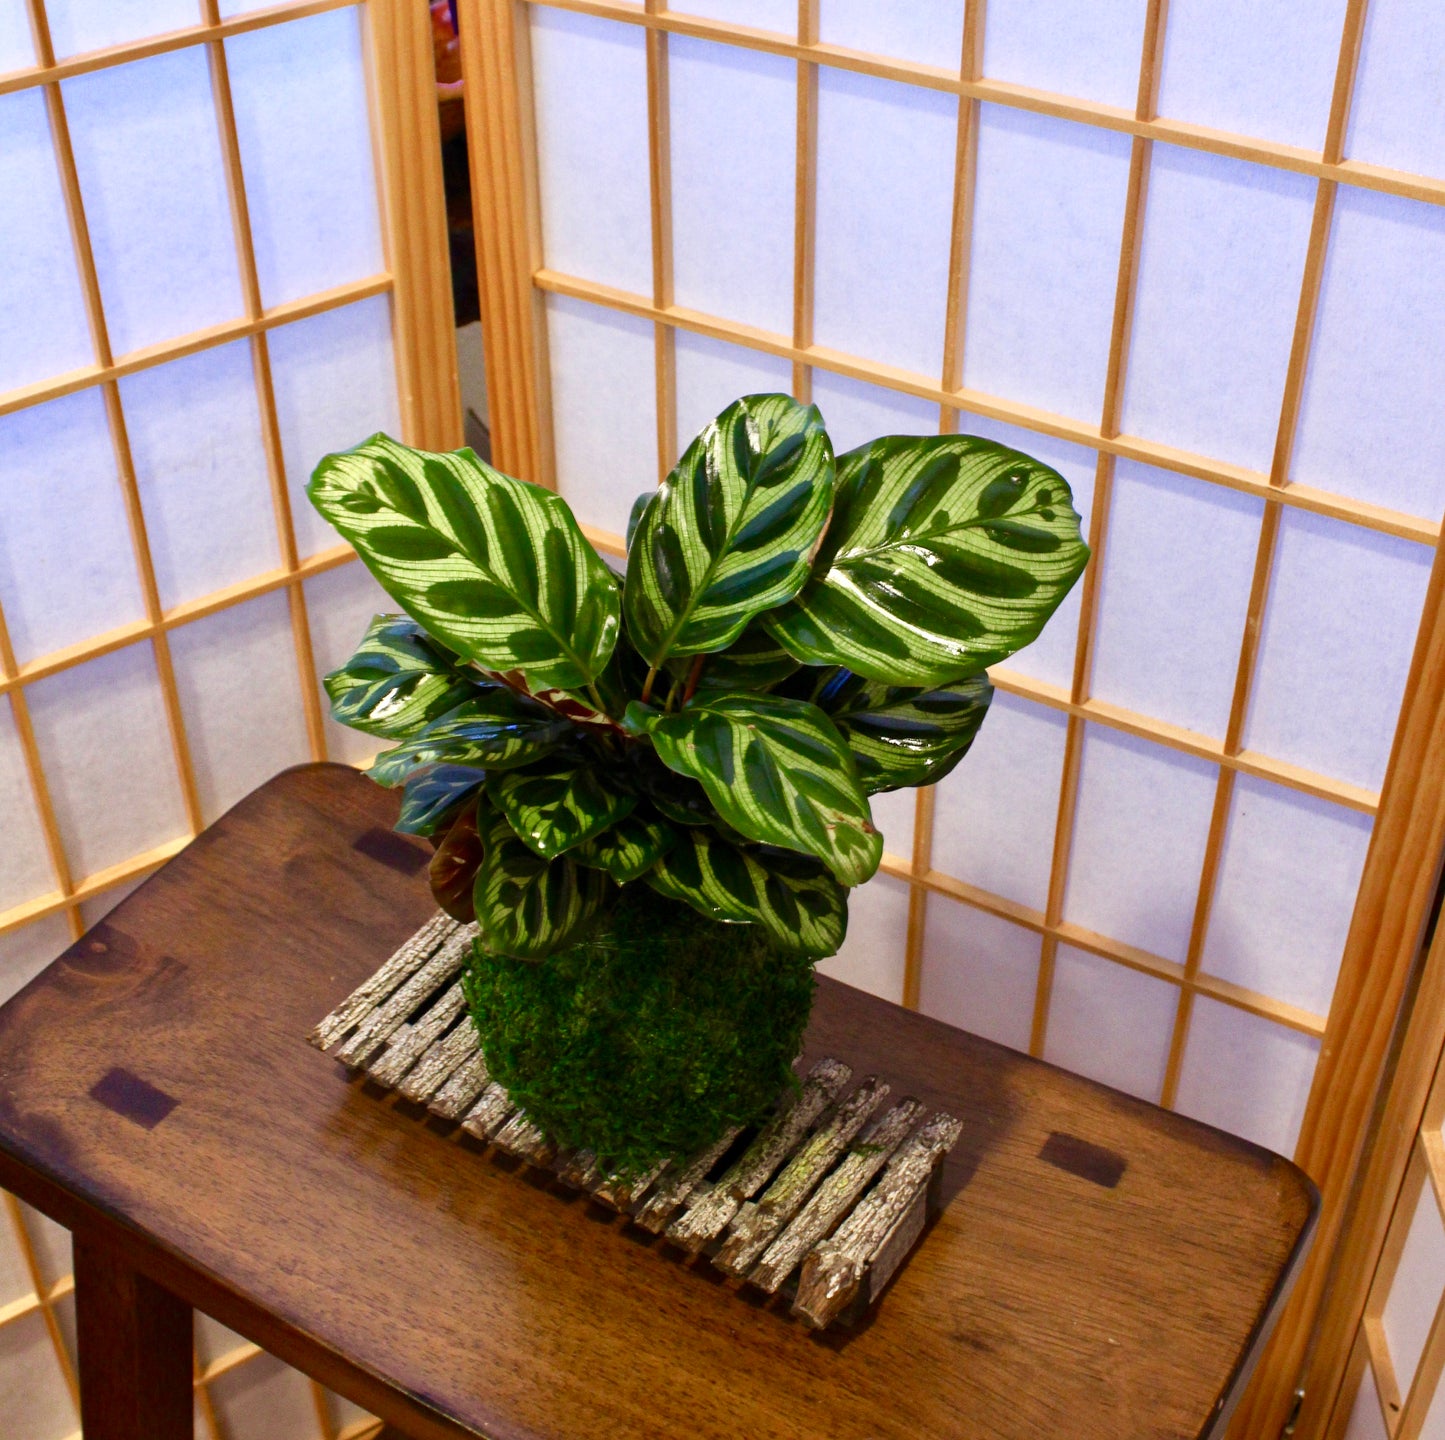 Calathea makoyana Kokedama - Bonsai Moss ball - Japanese house plant decoration